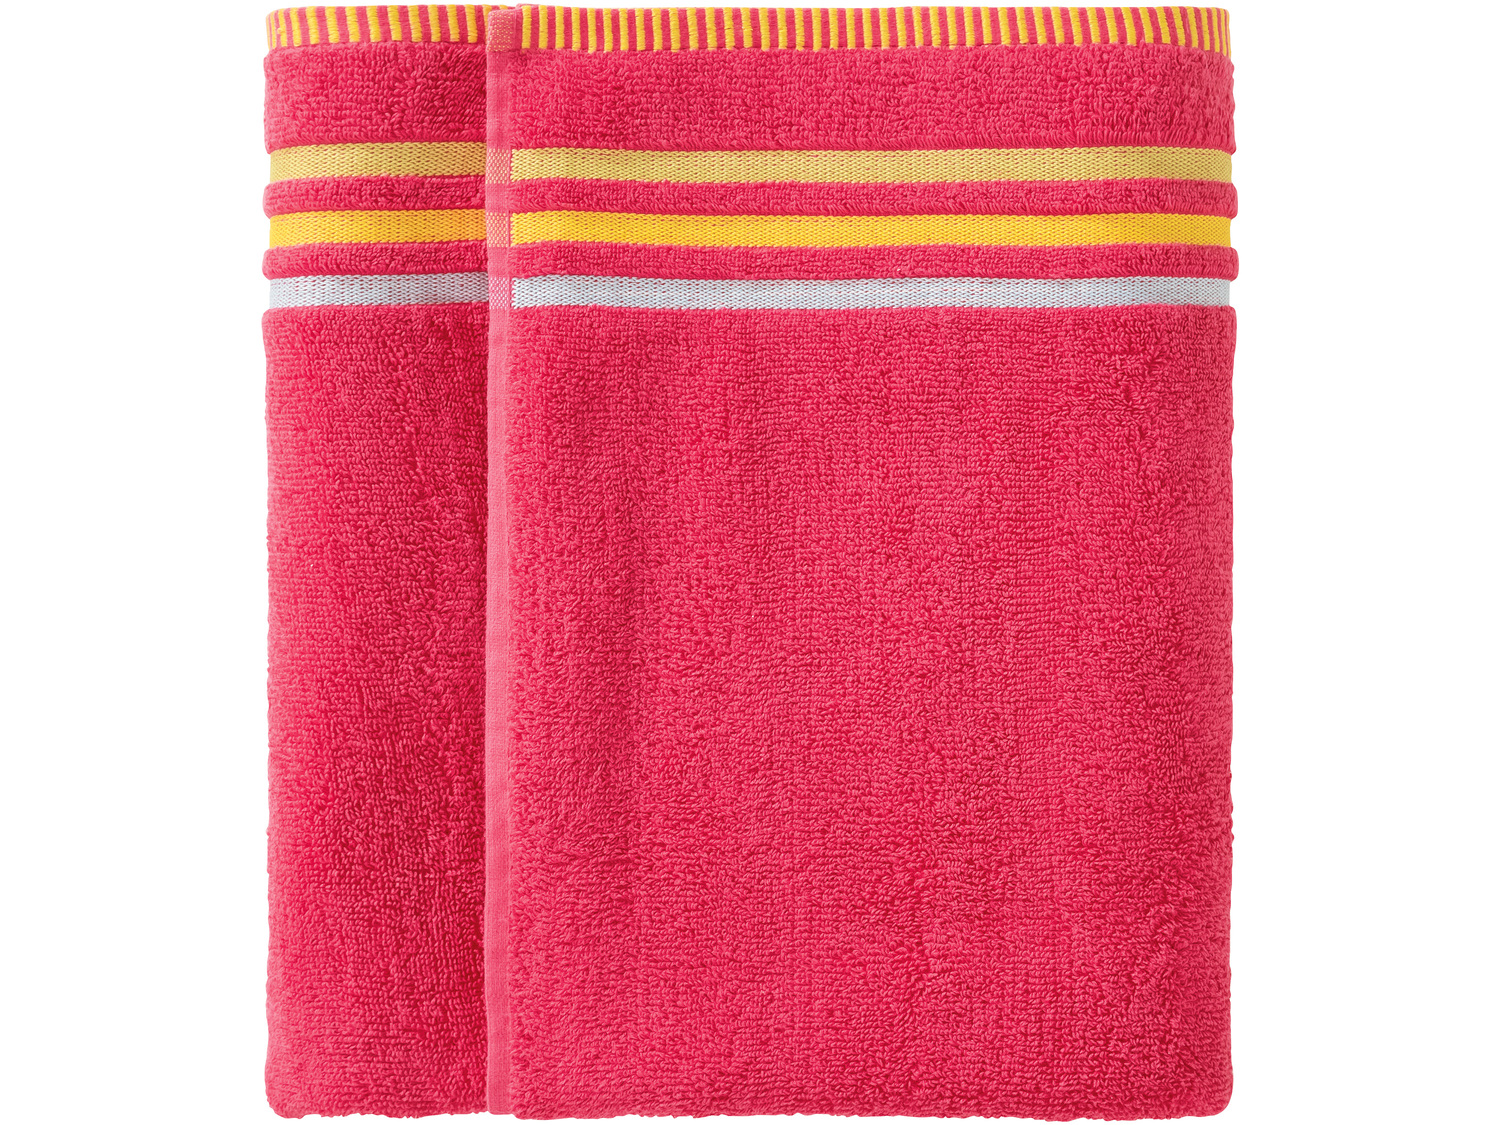 Ręcznik 100 x 150 cm Miomare, cena 34,99 PLN 
4 kolory 
- chłonne i wytrzymałe
- ...